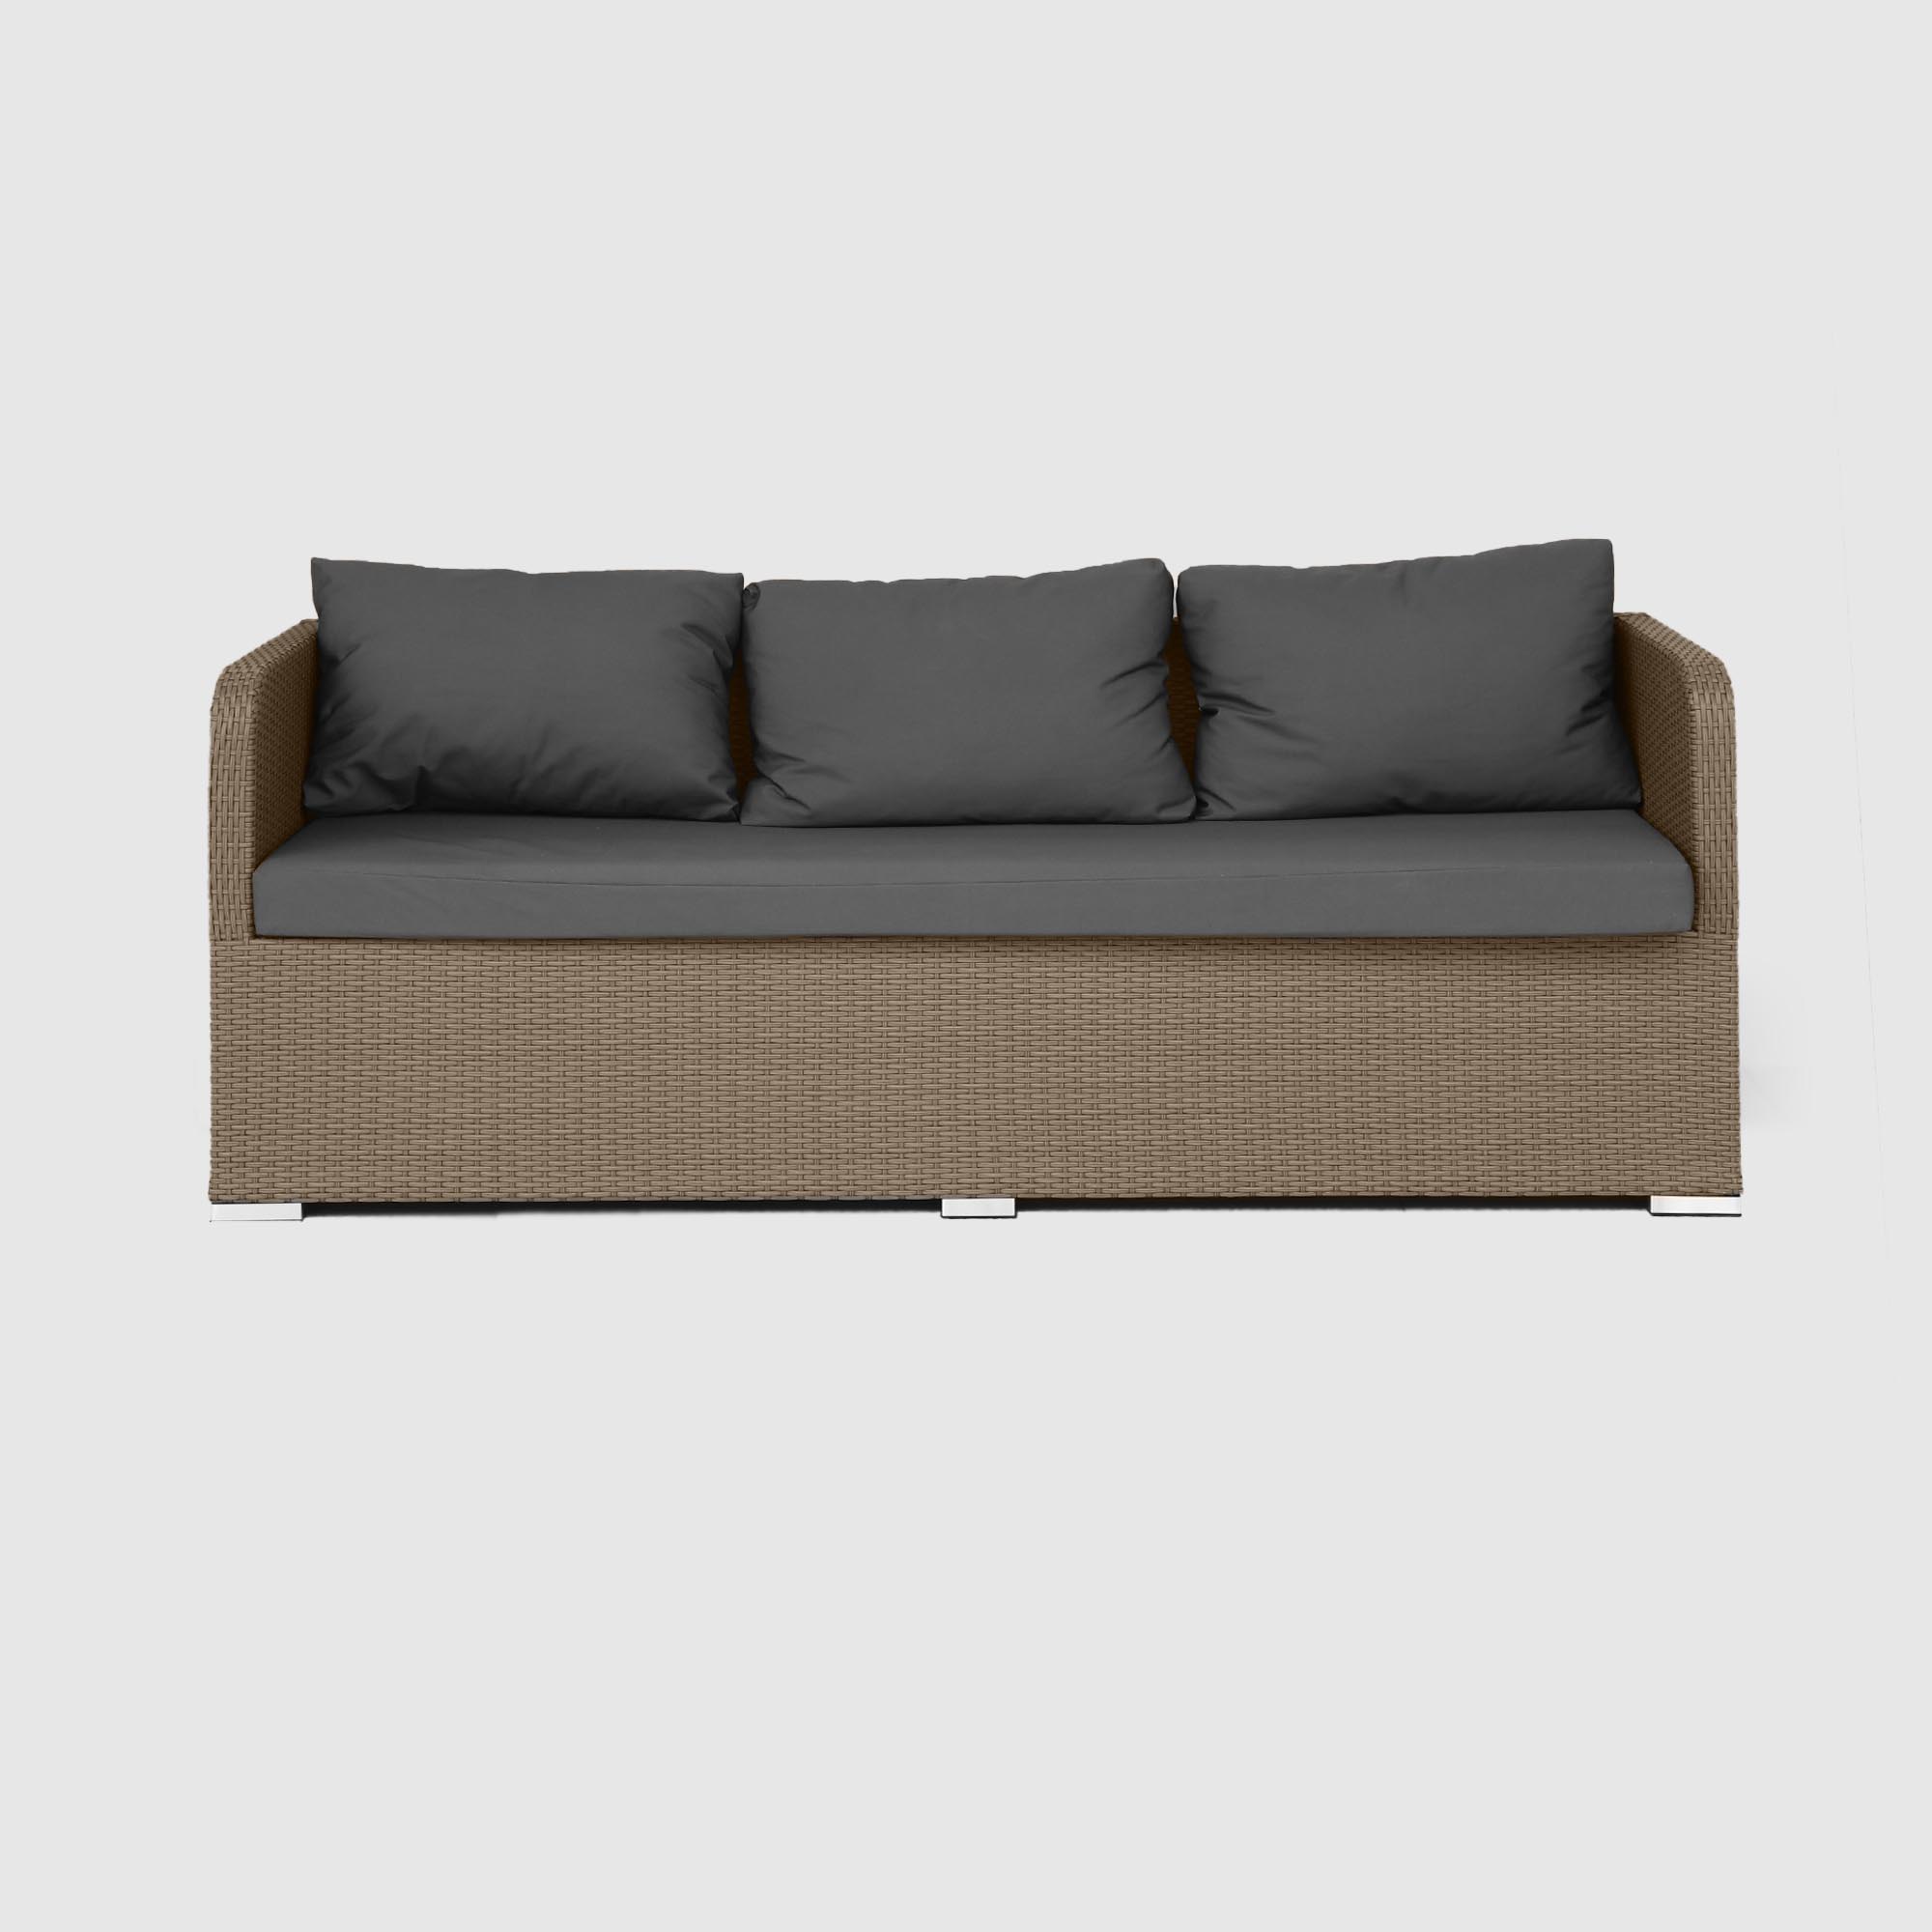 Комплект мебели NS Rattan LWS 21 коричневый с серым 3 предмета, цвет светло-коричневый, размер 220х75х75 - фото 9